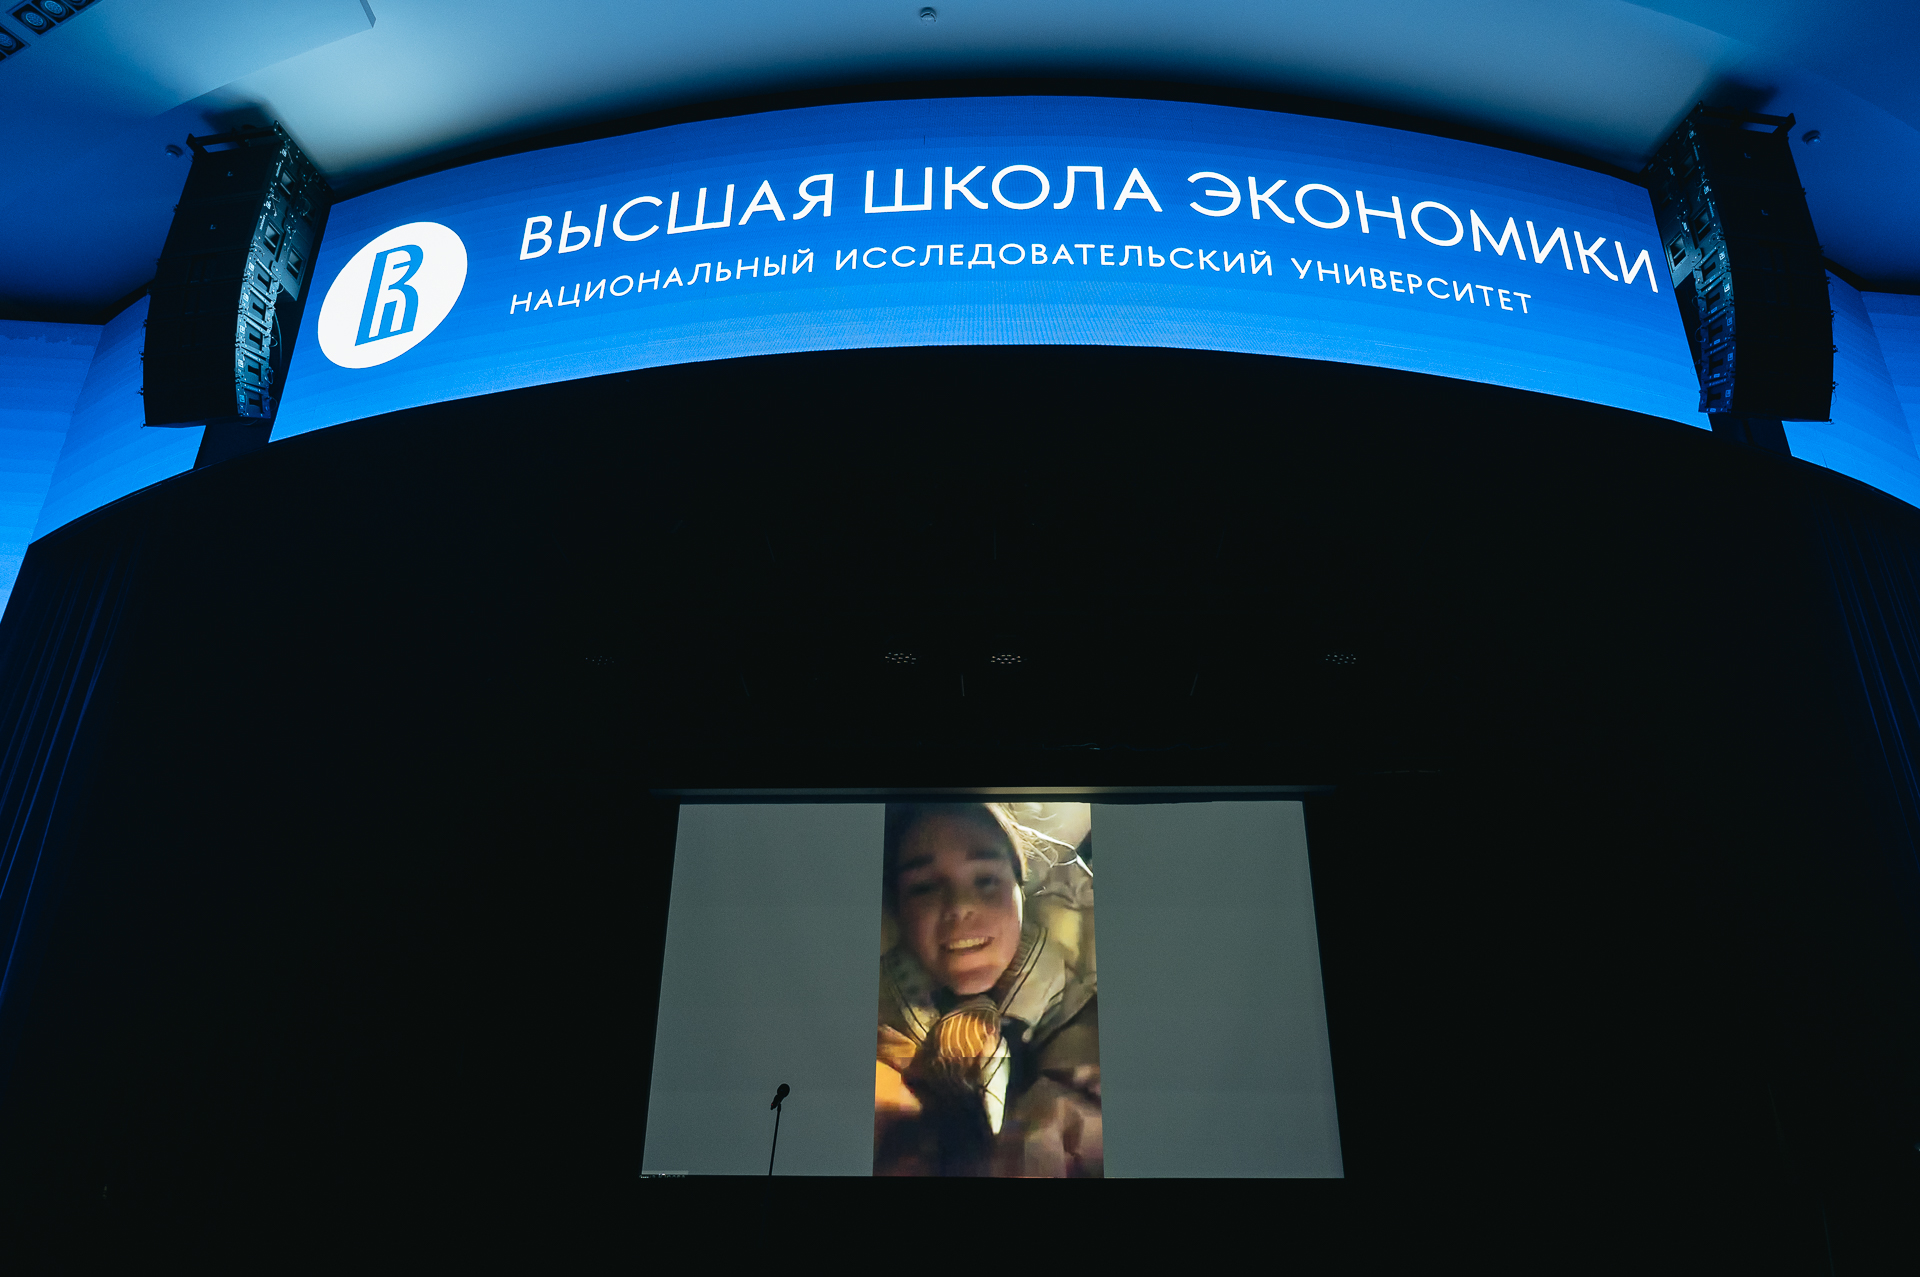 Полина Юрова произносит благодарственную речь по видеосвязи. Фото: Даниил Прокофьев